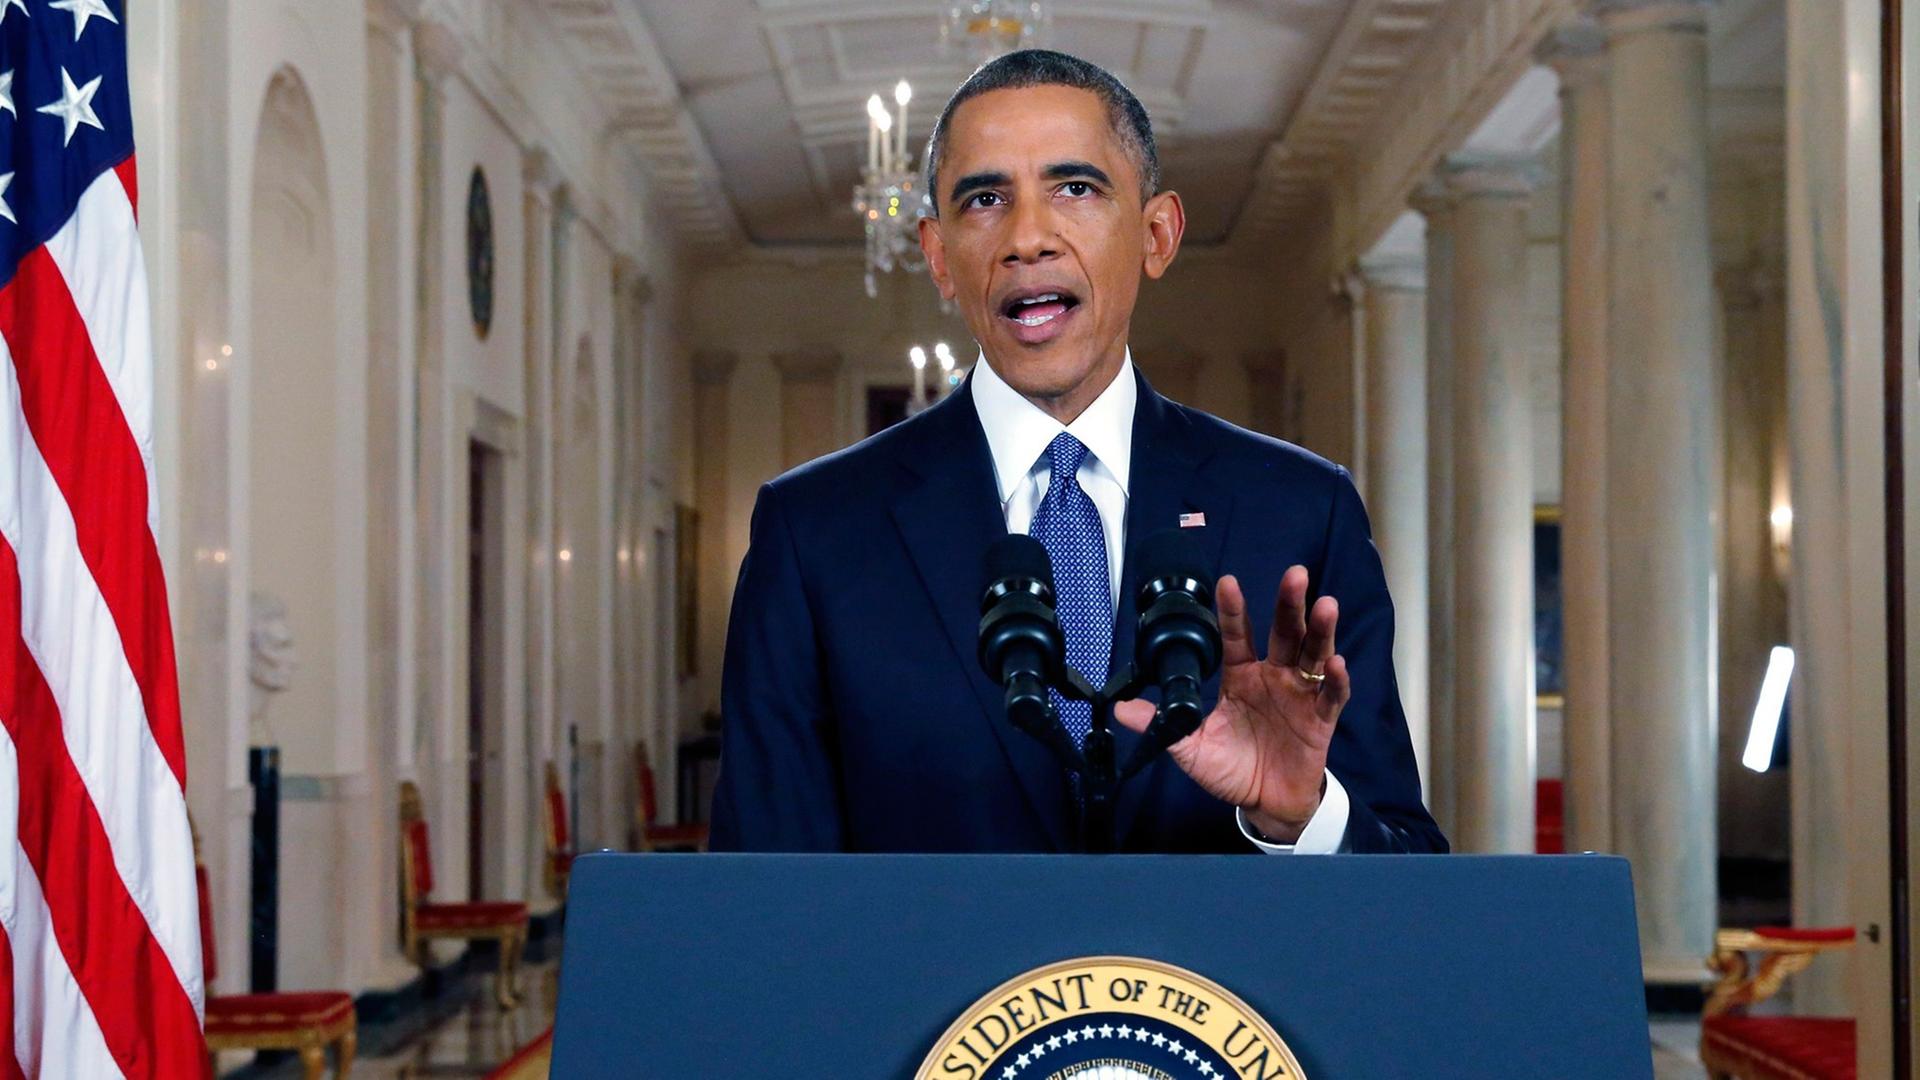 US-Präsident Barack Obama erklärt am 20.11.2014 in einer Fernsehansprache seine Reform der Einwanderungspolitik.